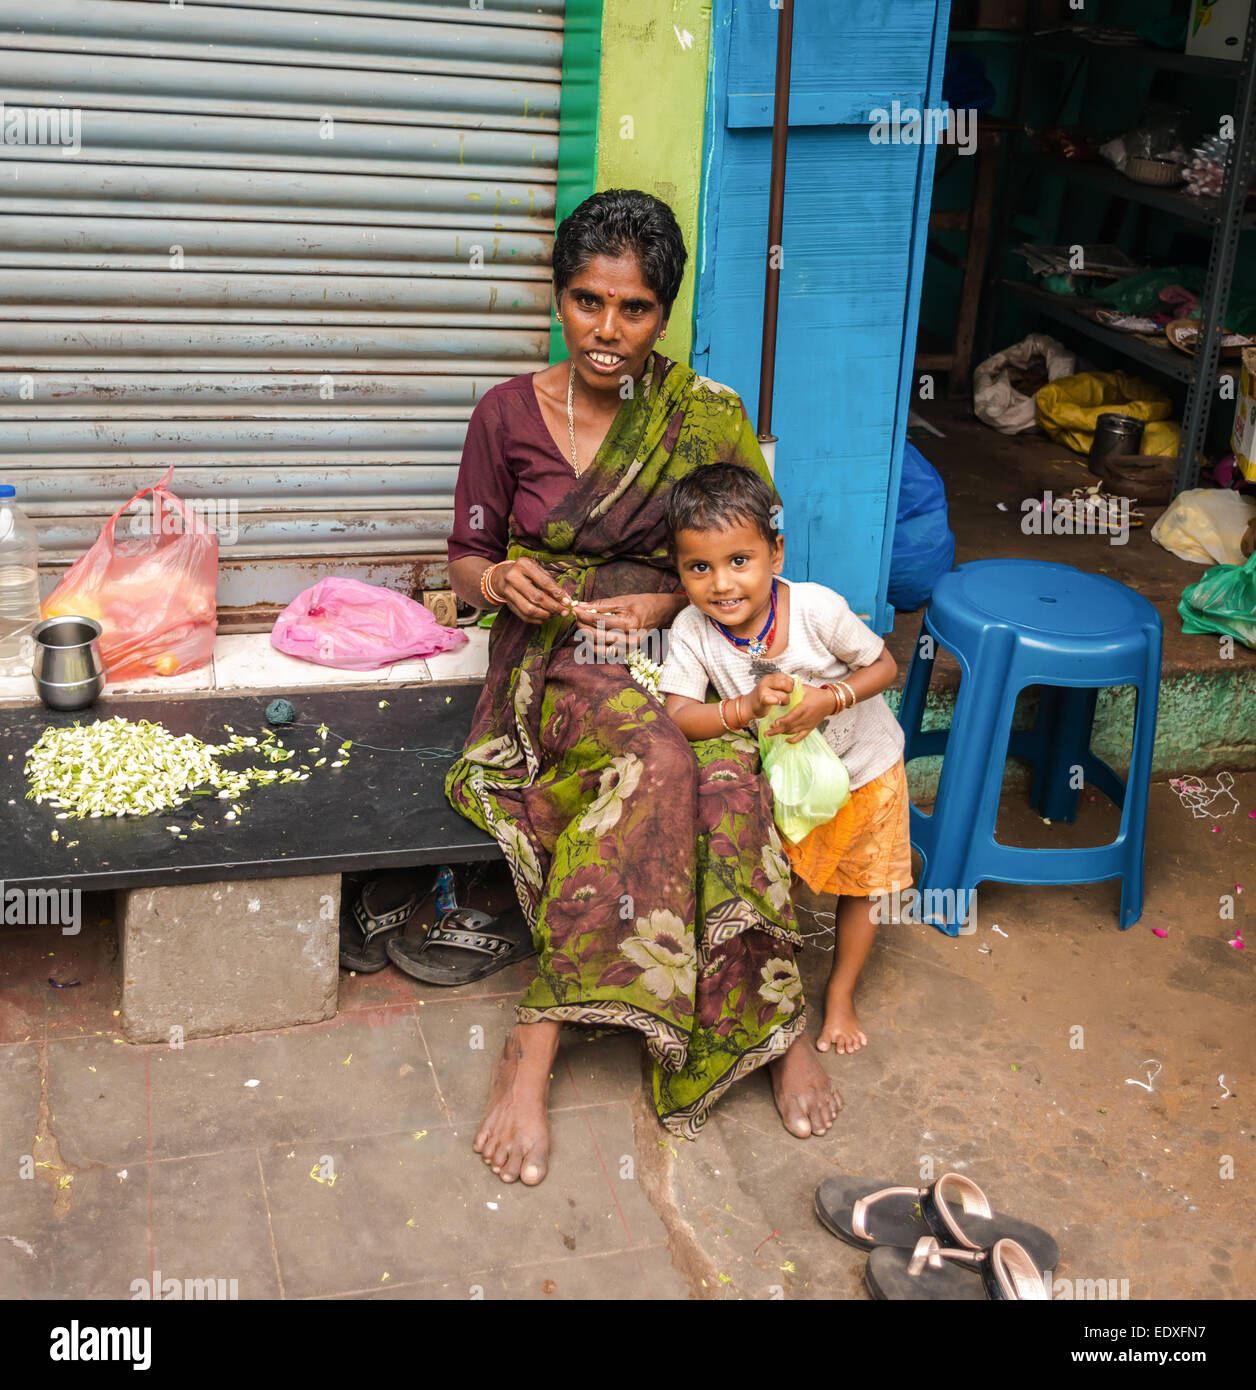 THANJAVOUR, India - 14 febbraio: una donna non identificato con il bambino nel tradizionale abbigliamento indiano sono seduti. La donna tesse una garla Foto Stock